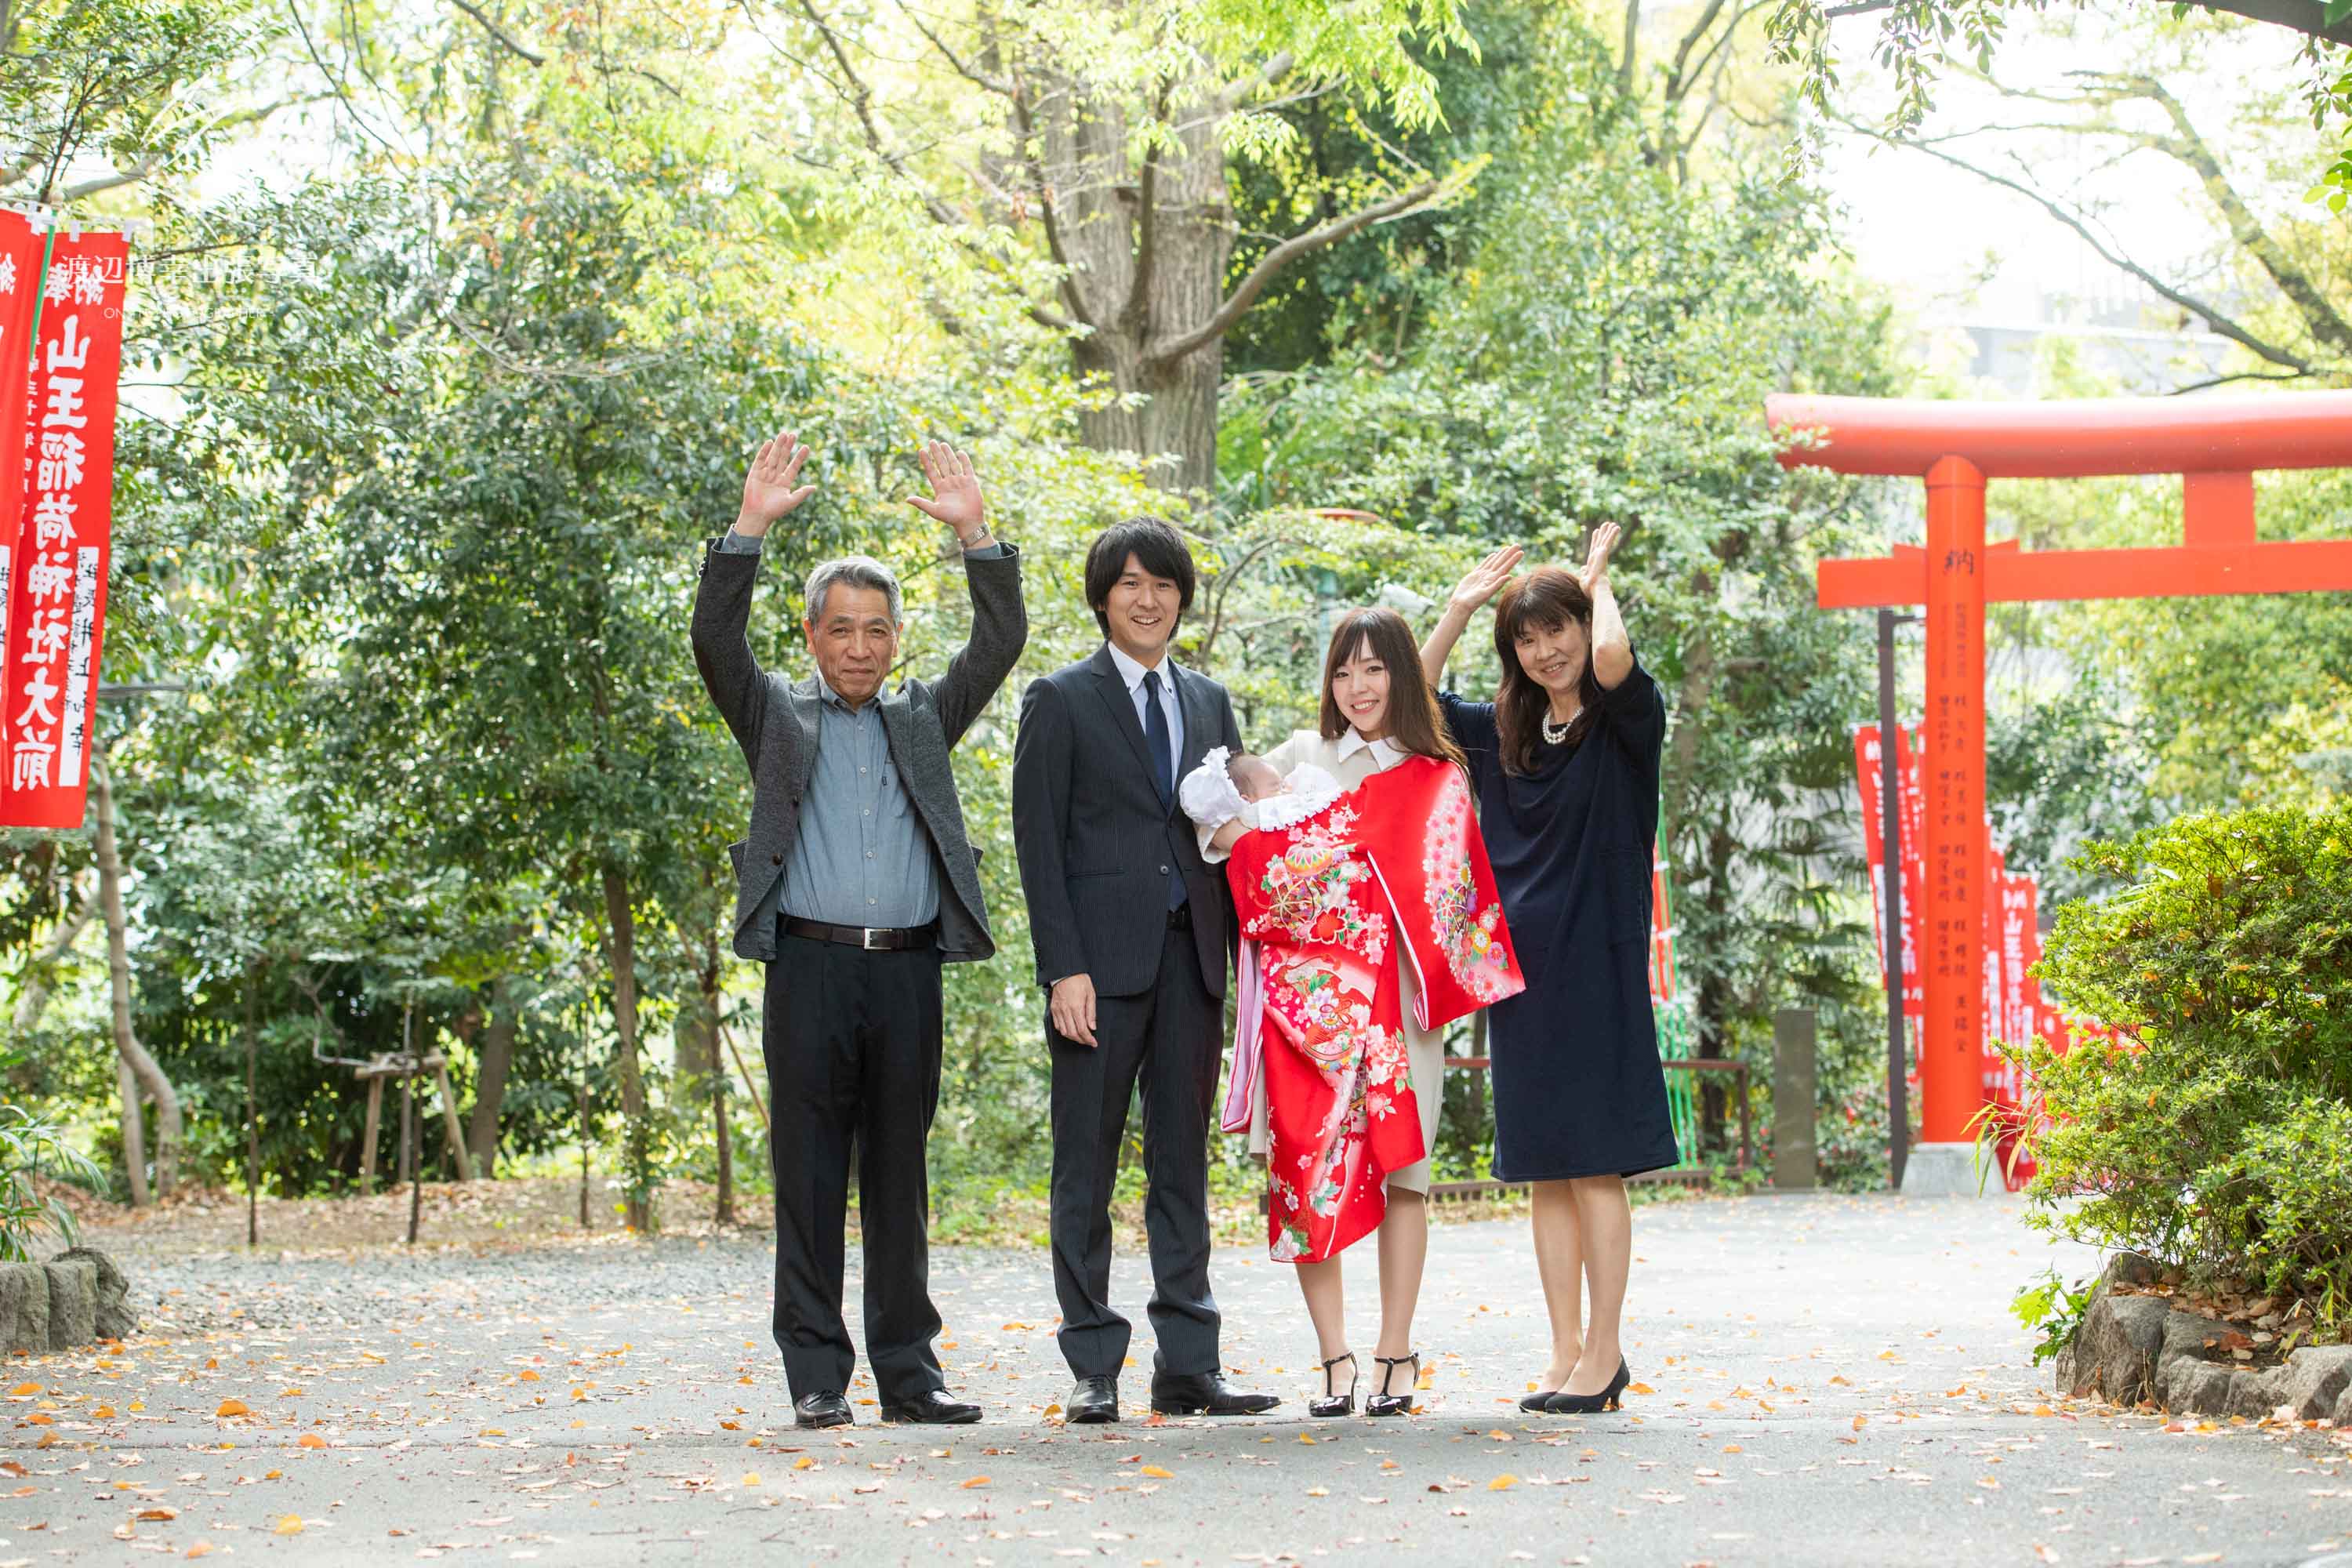 赤坂の日枝神社でお宮参りのバンザイをしている4人の集合写真